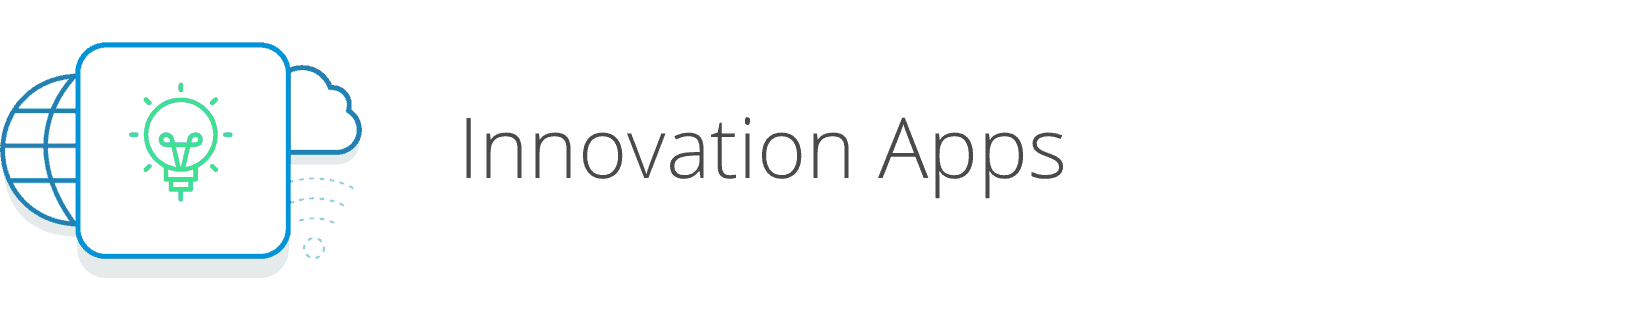 Innovation Apps